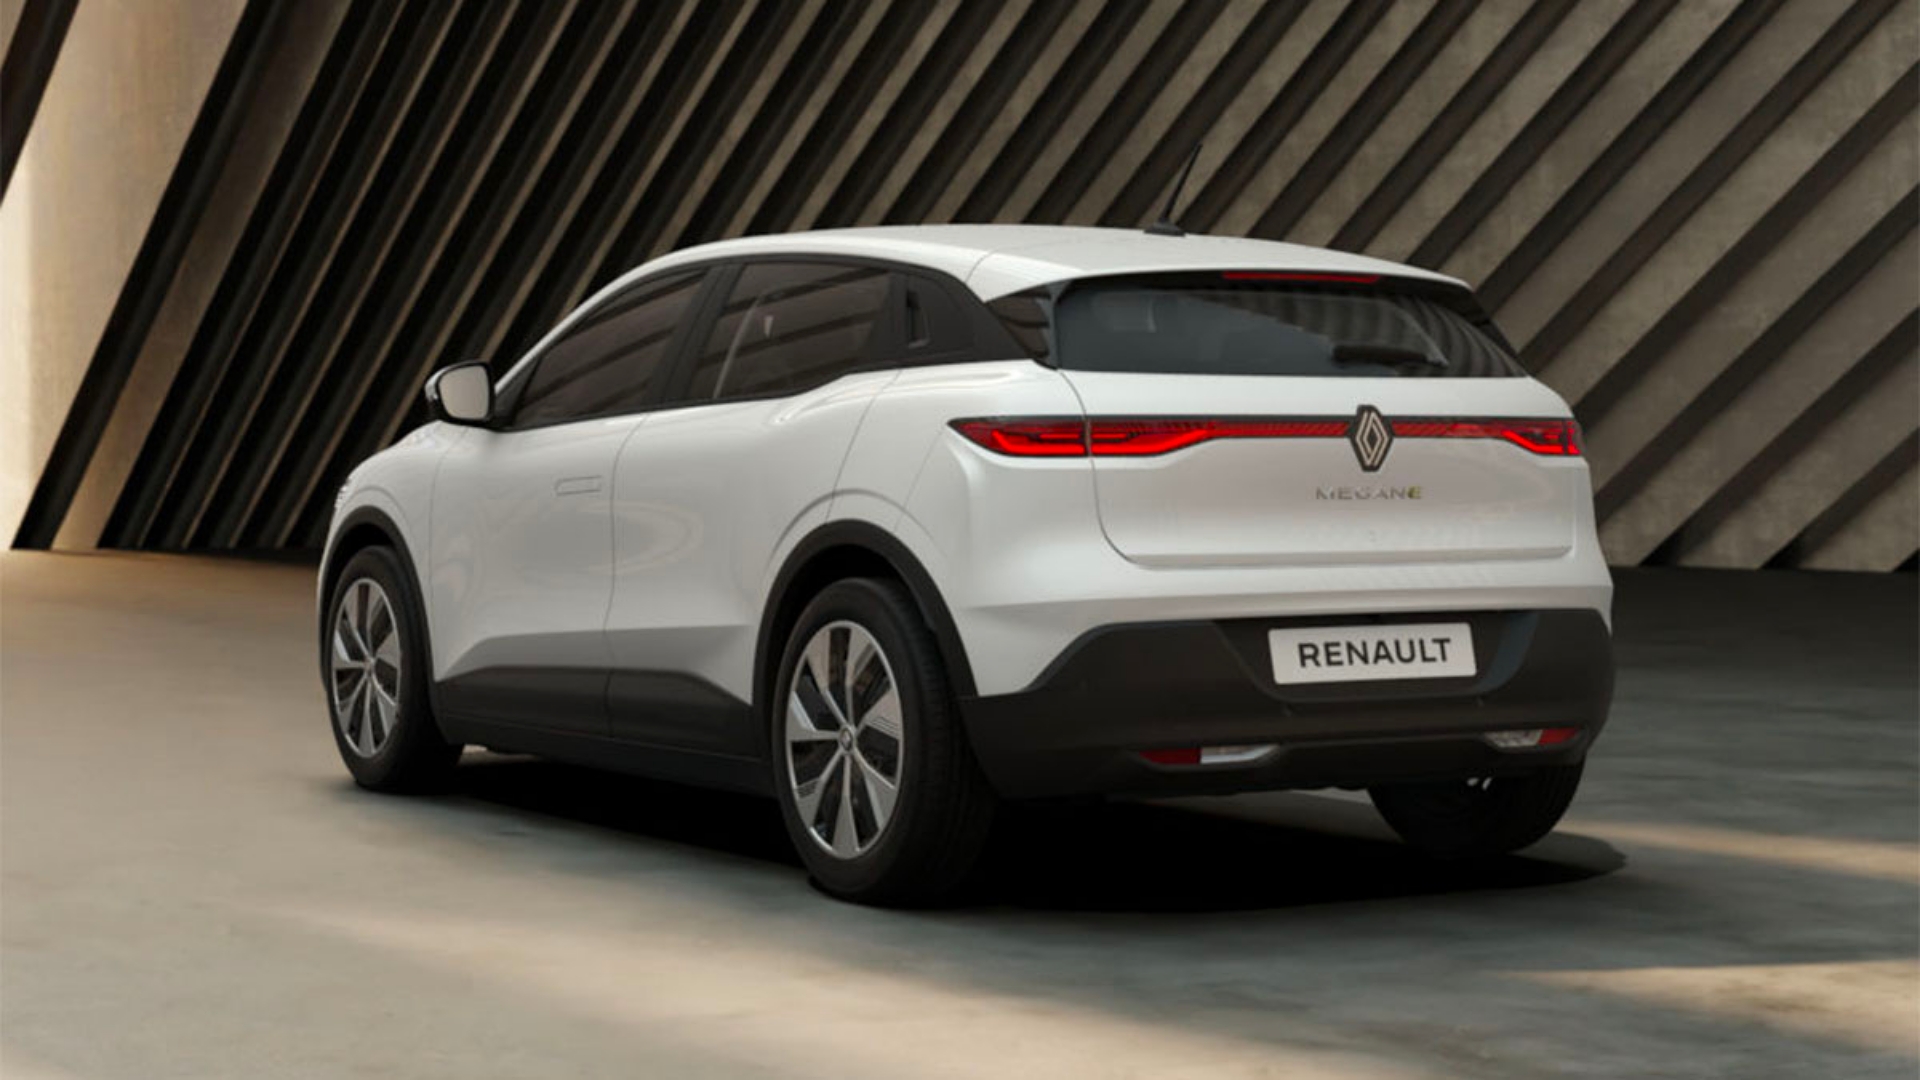 Renault-megane-evolution-er-mas-autonomia